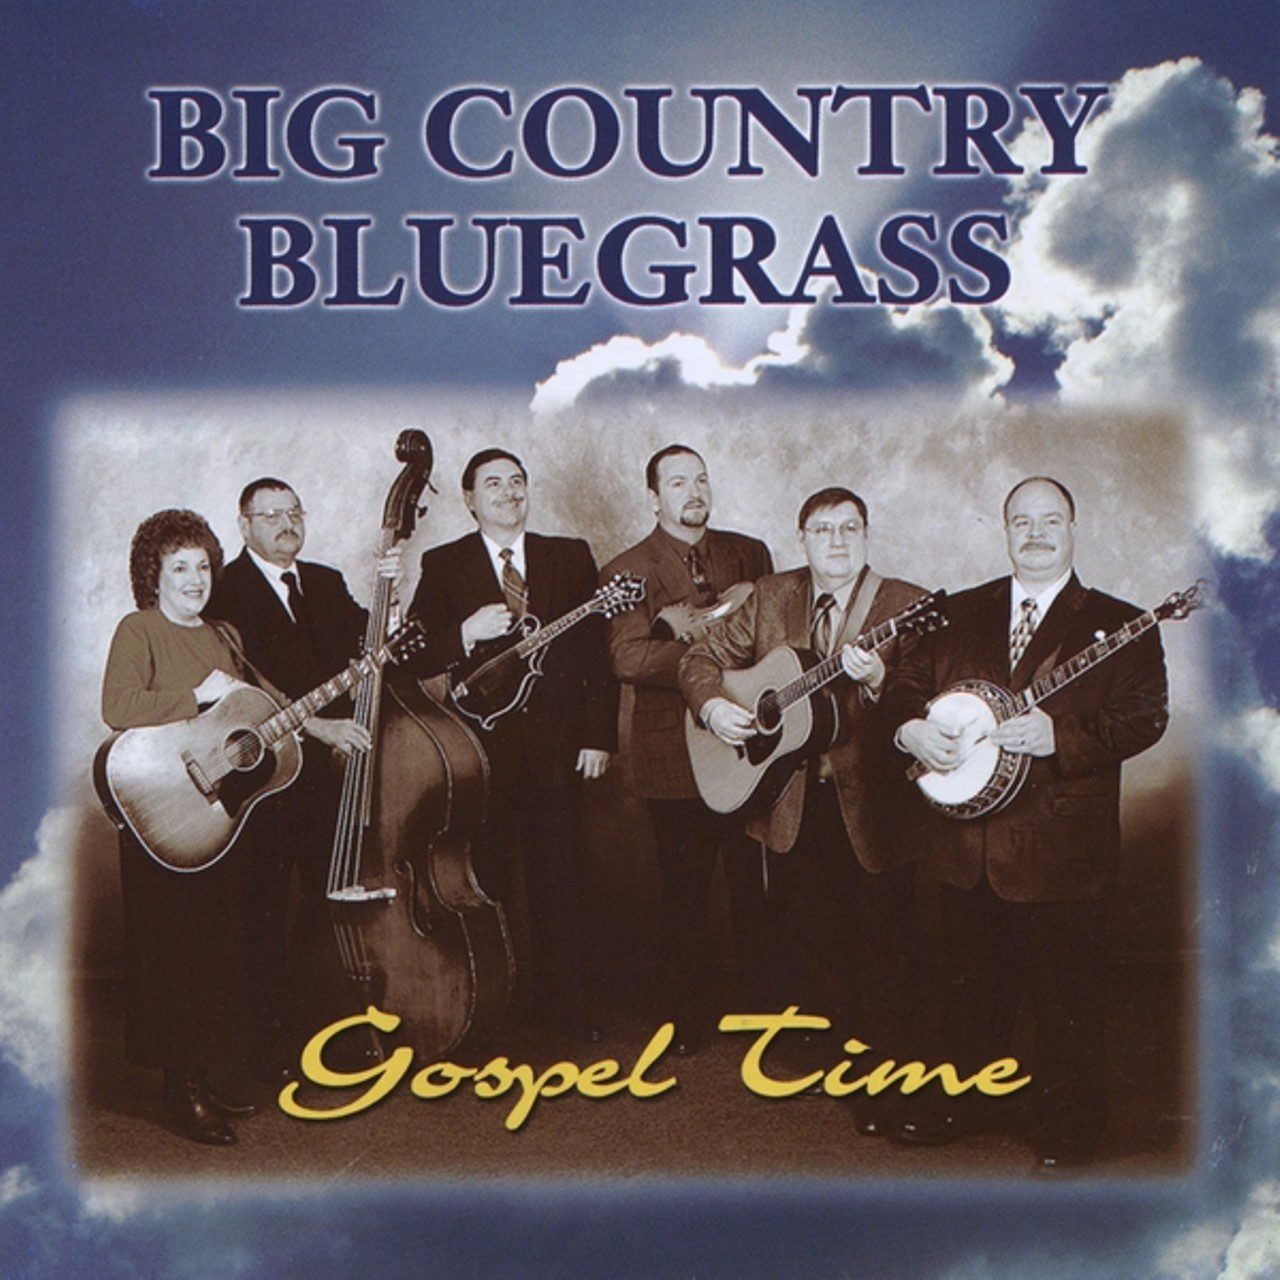 Big Country Bluegrass - Gospel Time cover album